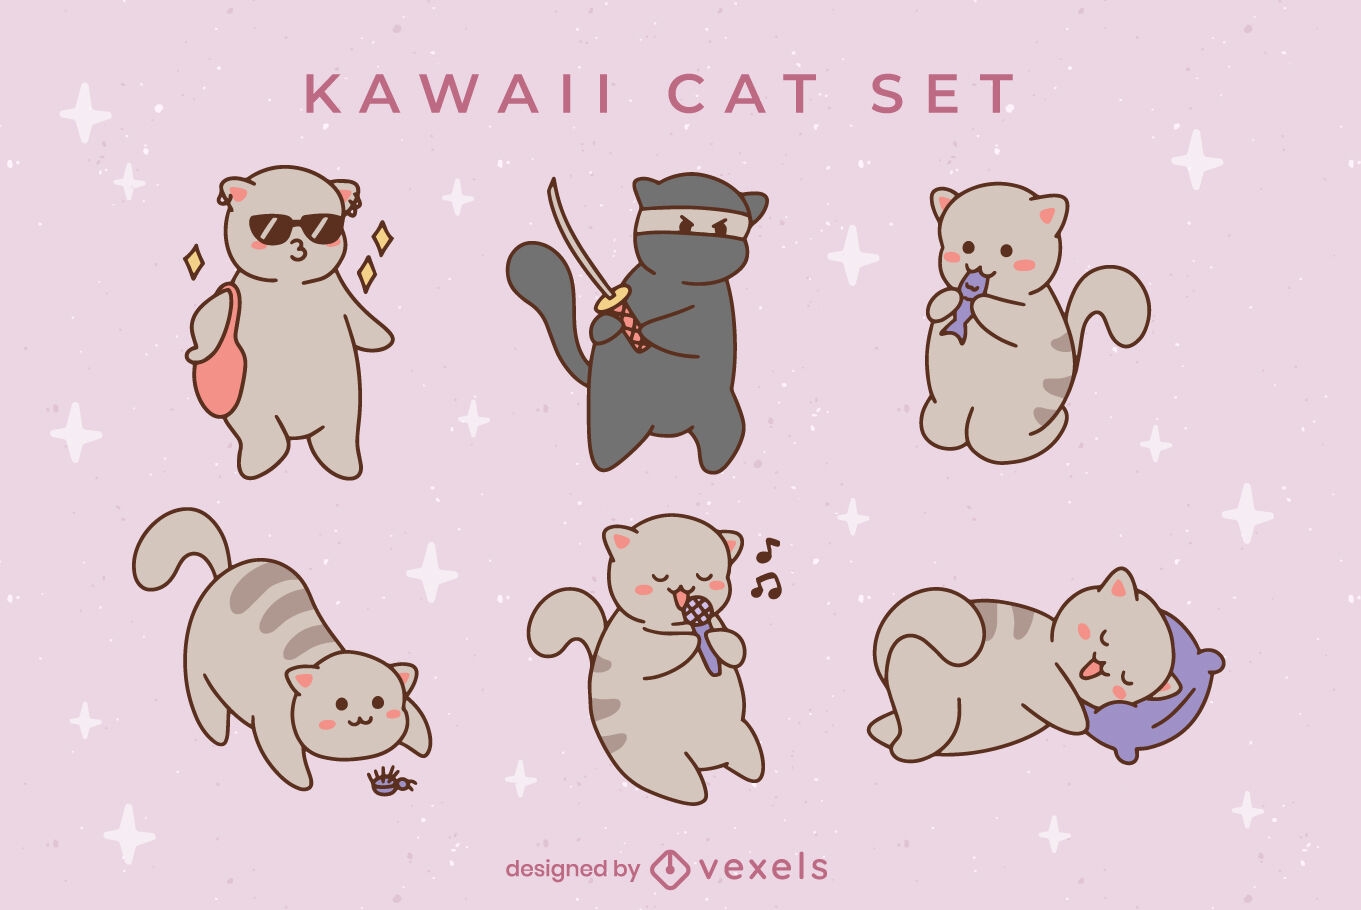 Kawaii cat character set design